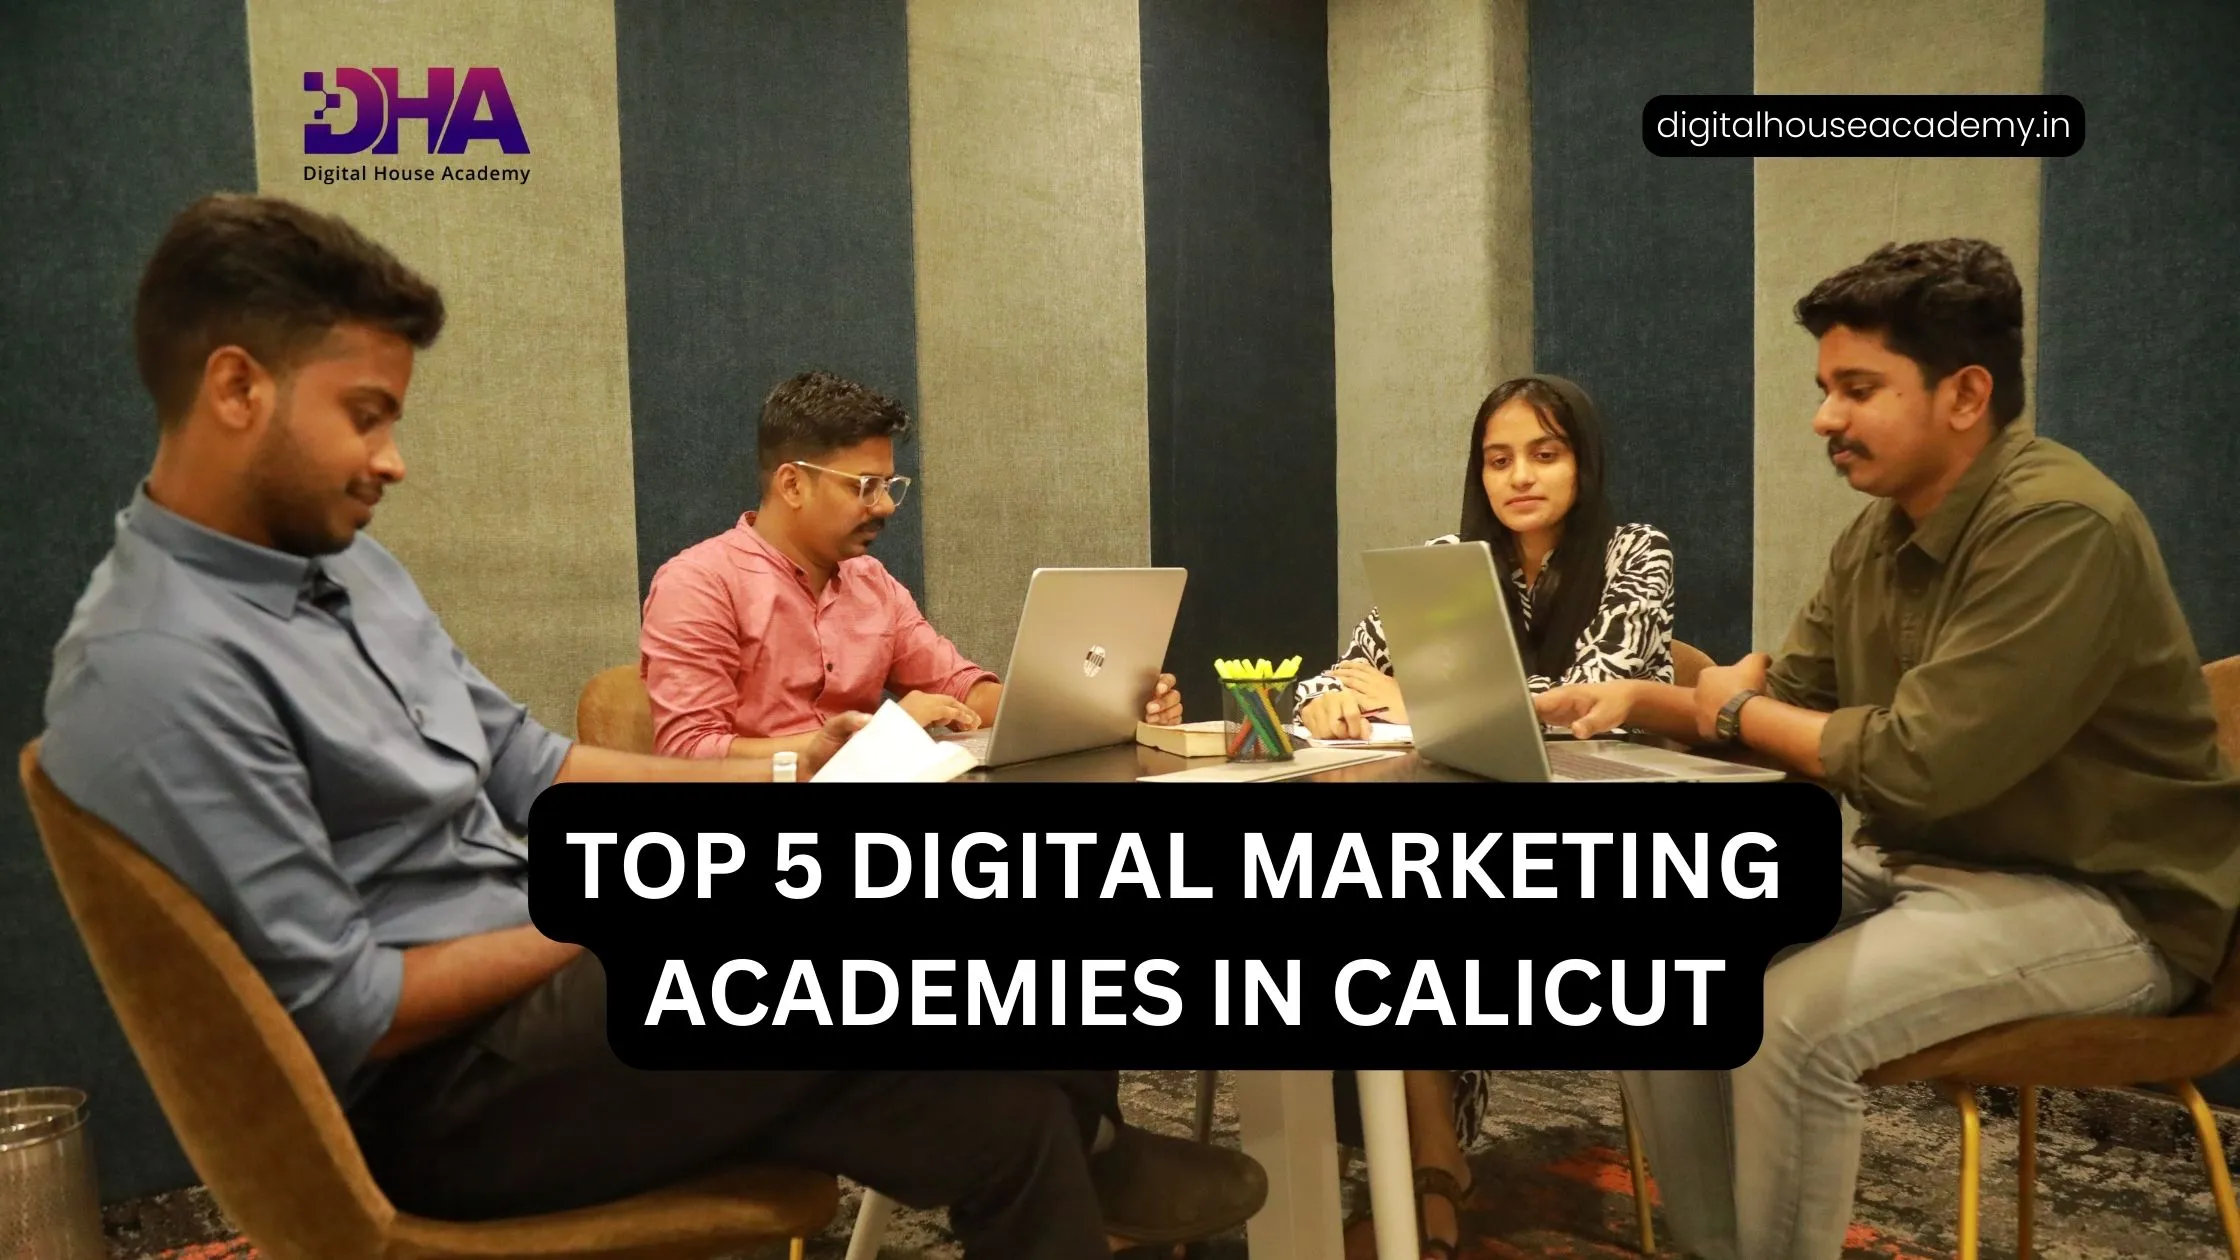 Top 5 Digital Marketing Academy in Calicut